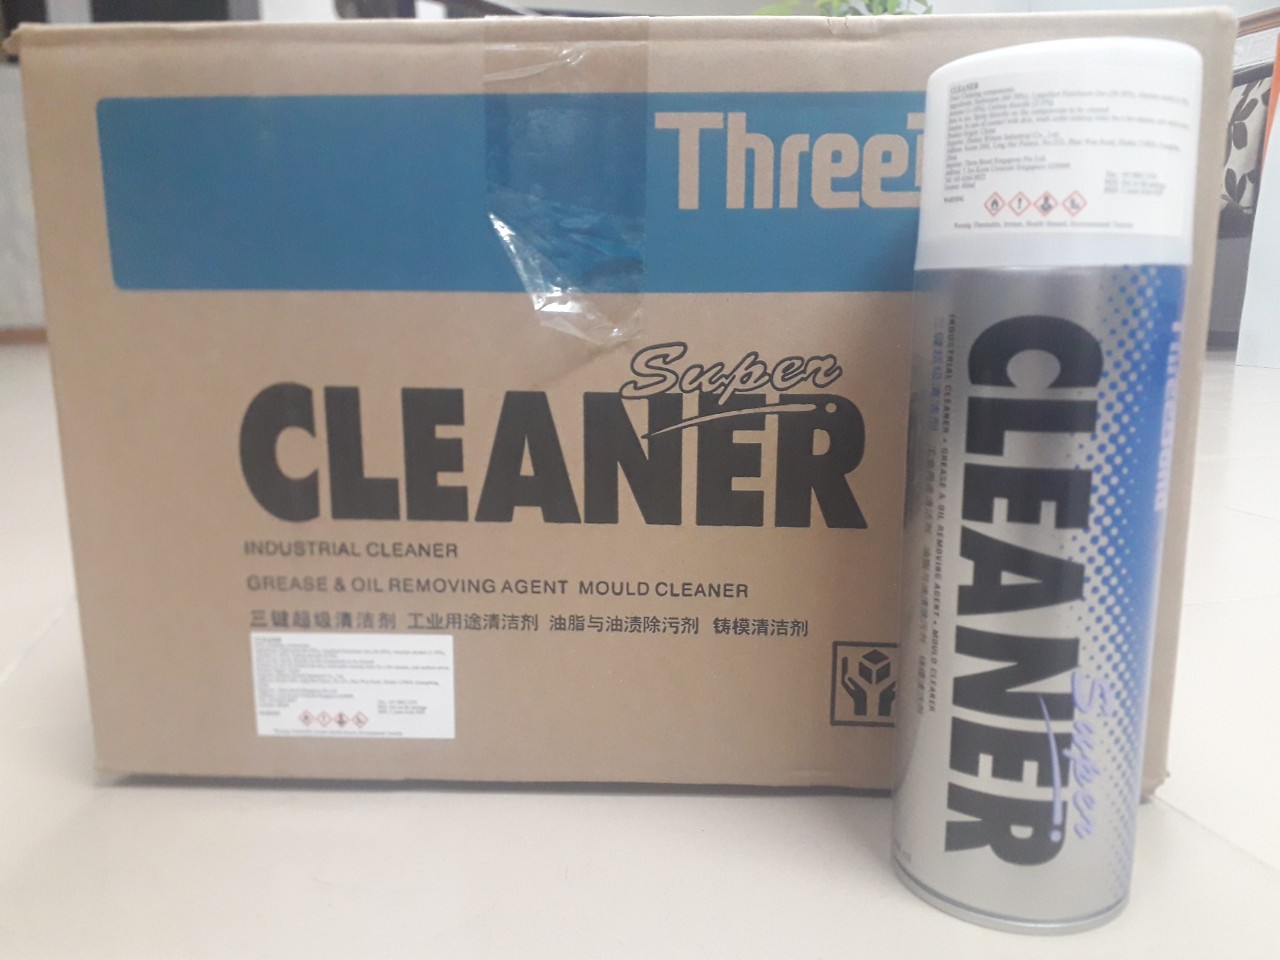 Chất tẩy rửa Threebond Super Cleaner 480ml - Hãng Threebond Nhật Bản chính hãng cao cấp